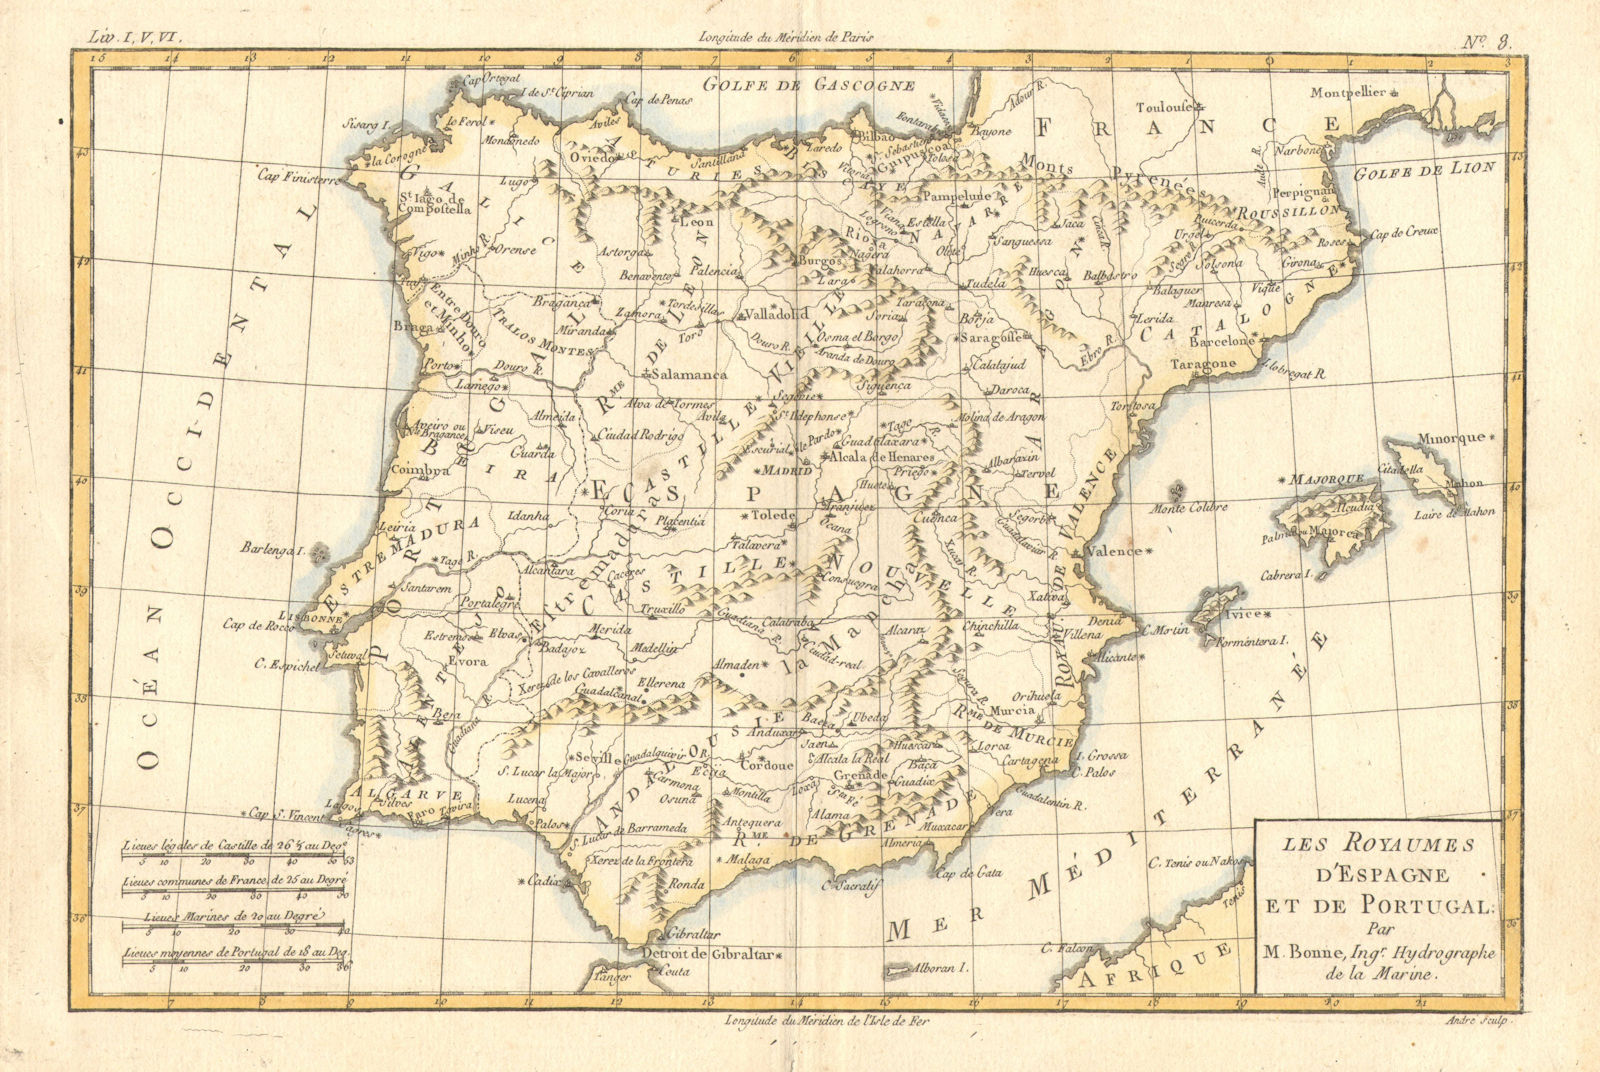 Les Royaumes d'Espagne et de Portugal by Rigobert Bonne. Iberia Spain c1774 map